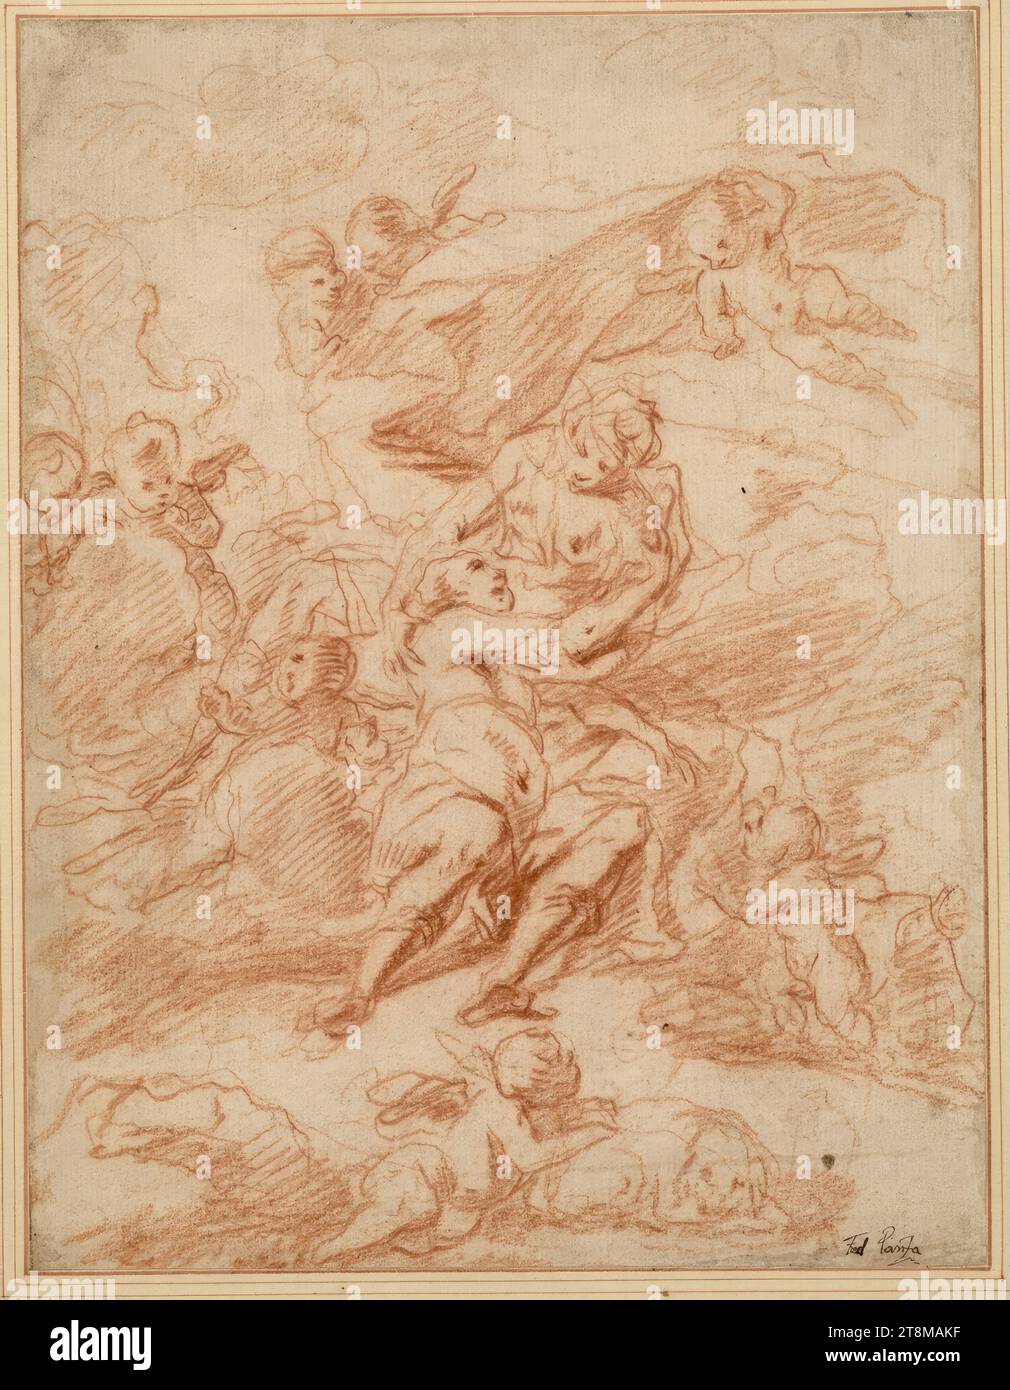 Venere cerca di trattenere Adone. Sotto, un putto si appoggia al cane da caccia di Adone (Telesko), Federico Panza (Italia, circa 1633/43 - 1703), disegno, gesso rosso, 27,2 x 20,7 cm, l. duca Alberto di Sassonia-Teschen, 'Fed. Panza Foto Stock